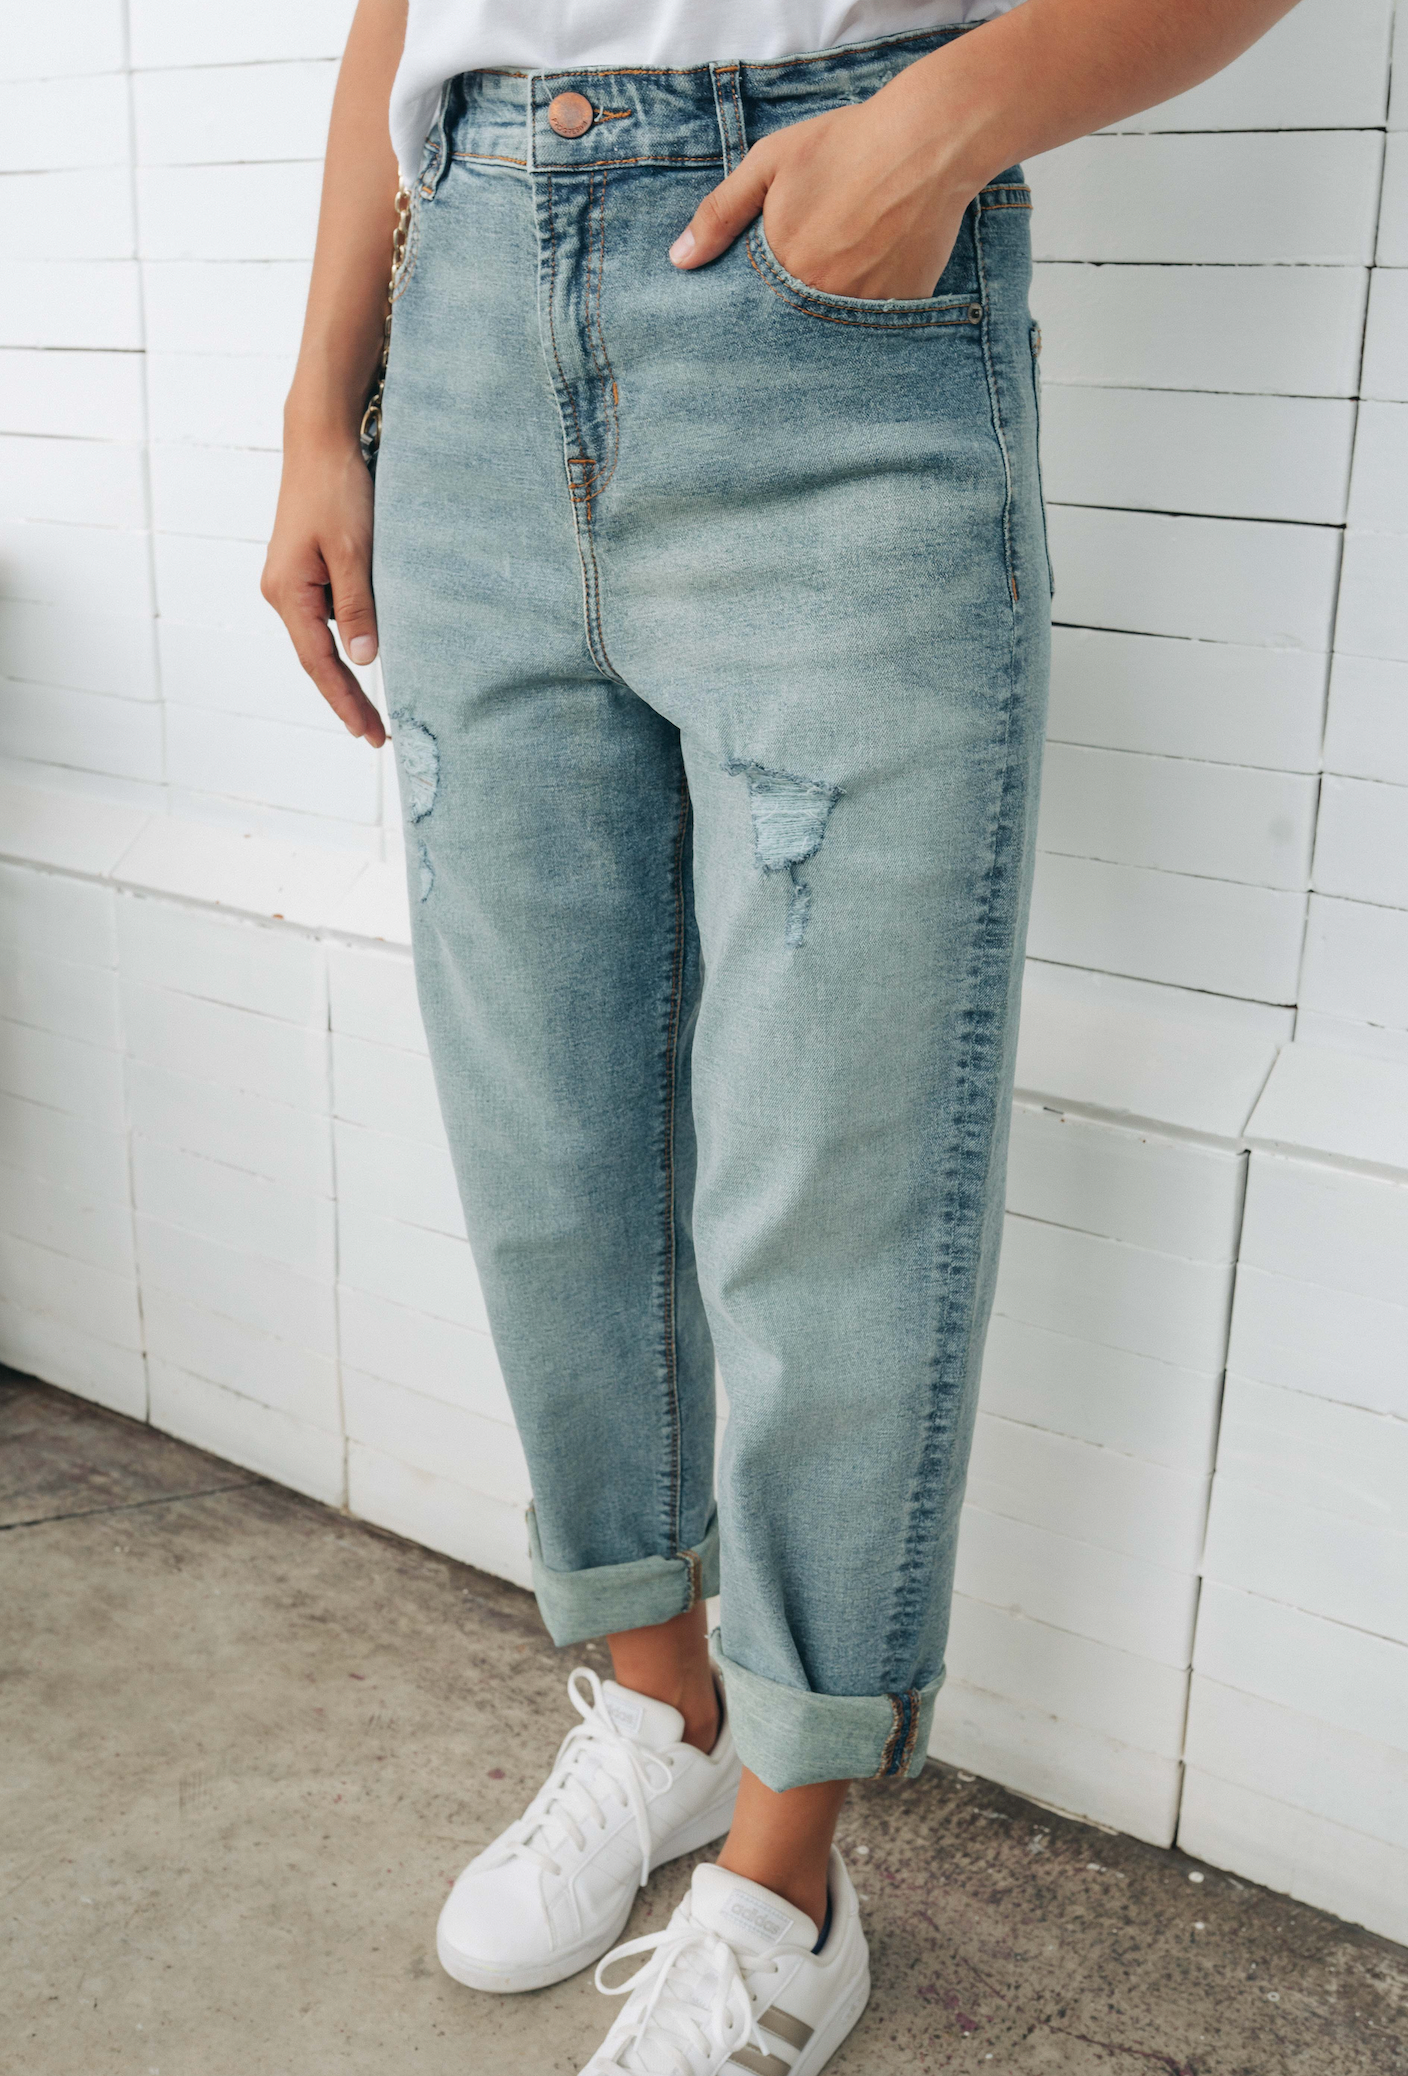 pistola Premedicación Tarjeta postal Jeans super denim estilo mom jeans - celeste – Progresiva Guatemala